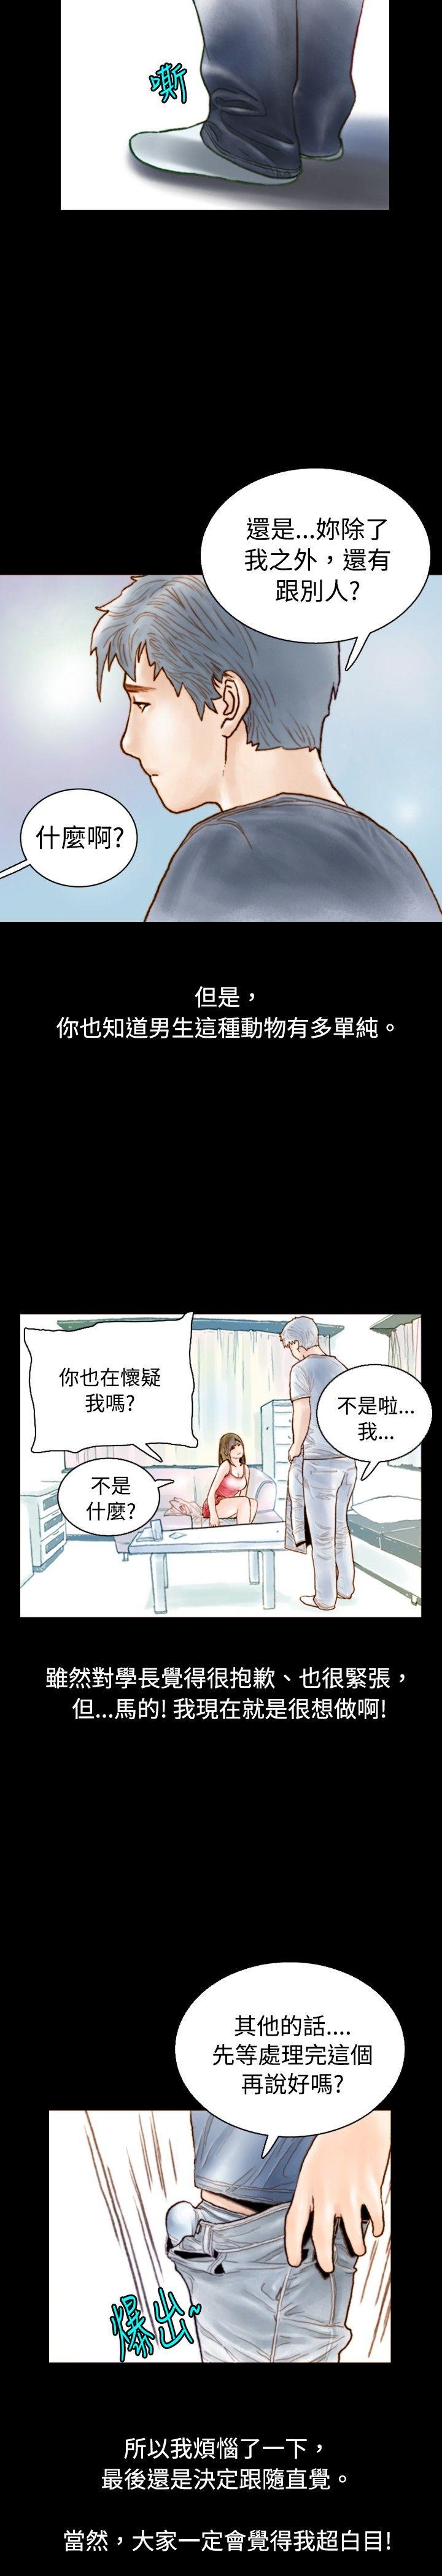 韩国污漫画 秘密Story 危险关係(中) 11